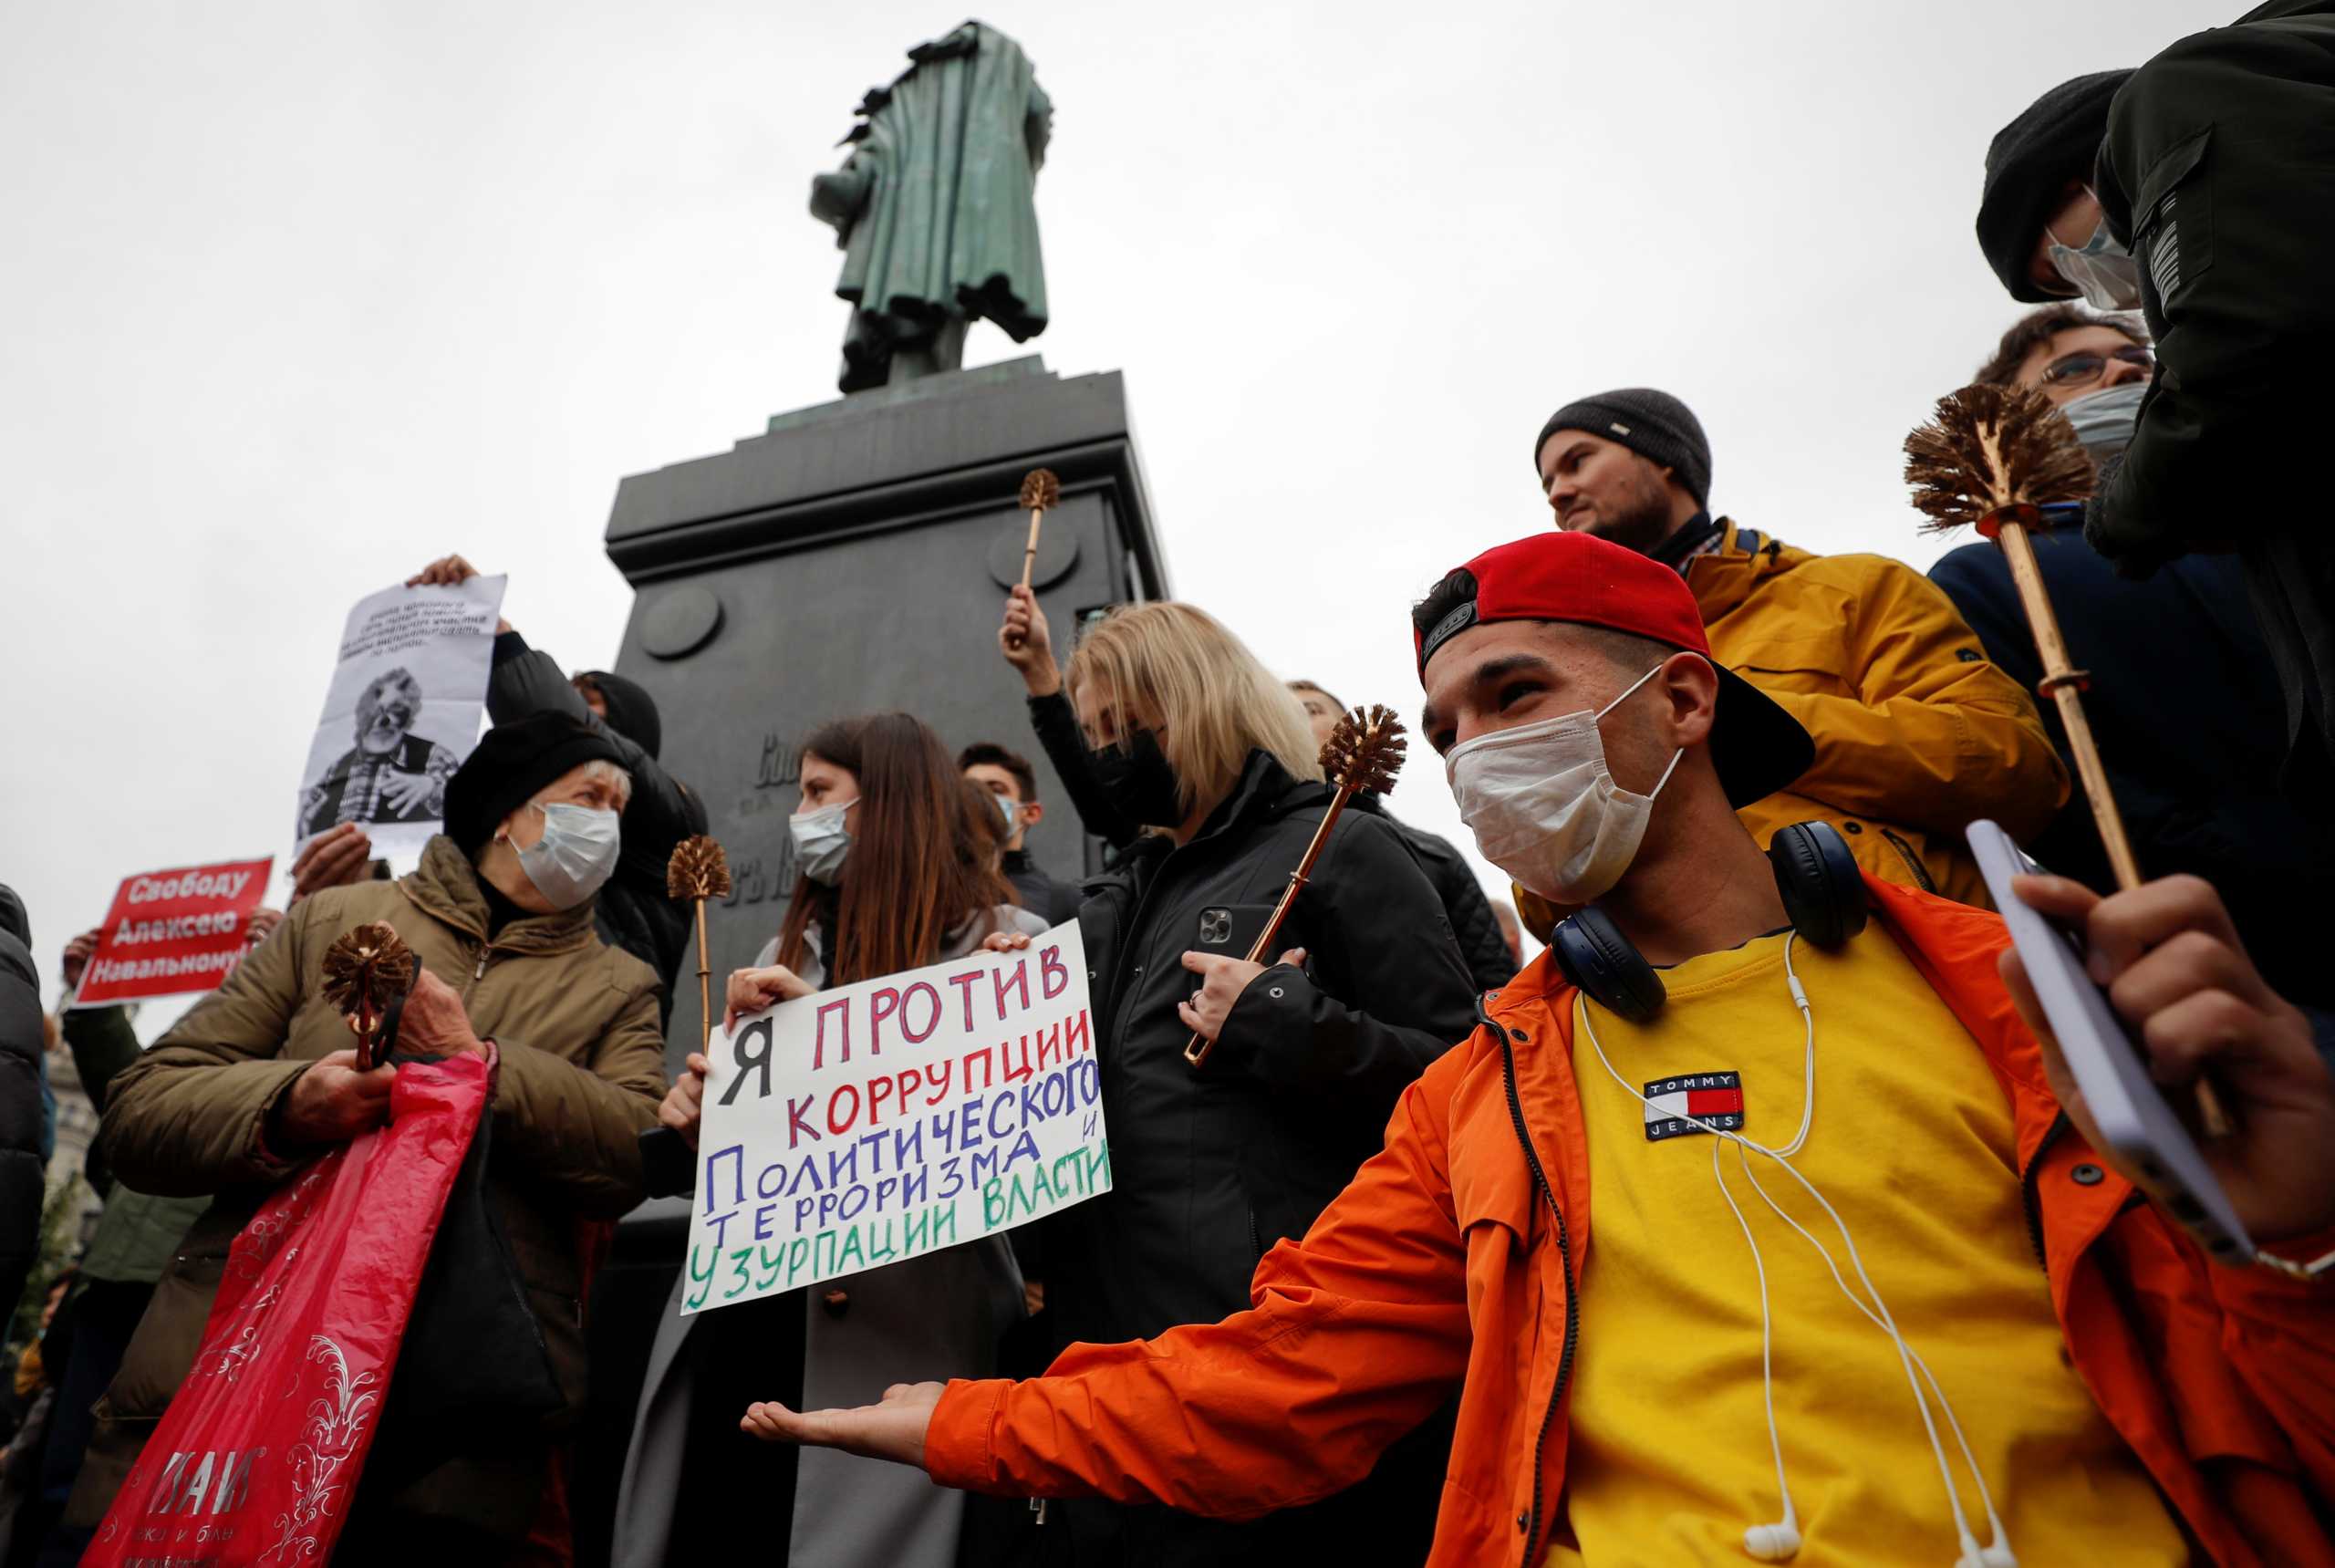 Ρωσία: Εκατοντάδες πολίτες διαδήλωσαν για να καταγγείλουν τα αποτελέσματα των βουλευτικών εκλογών